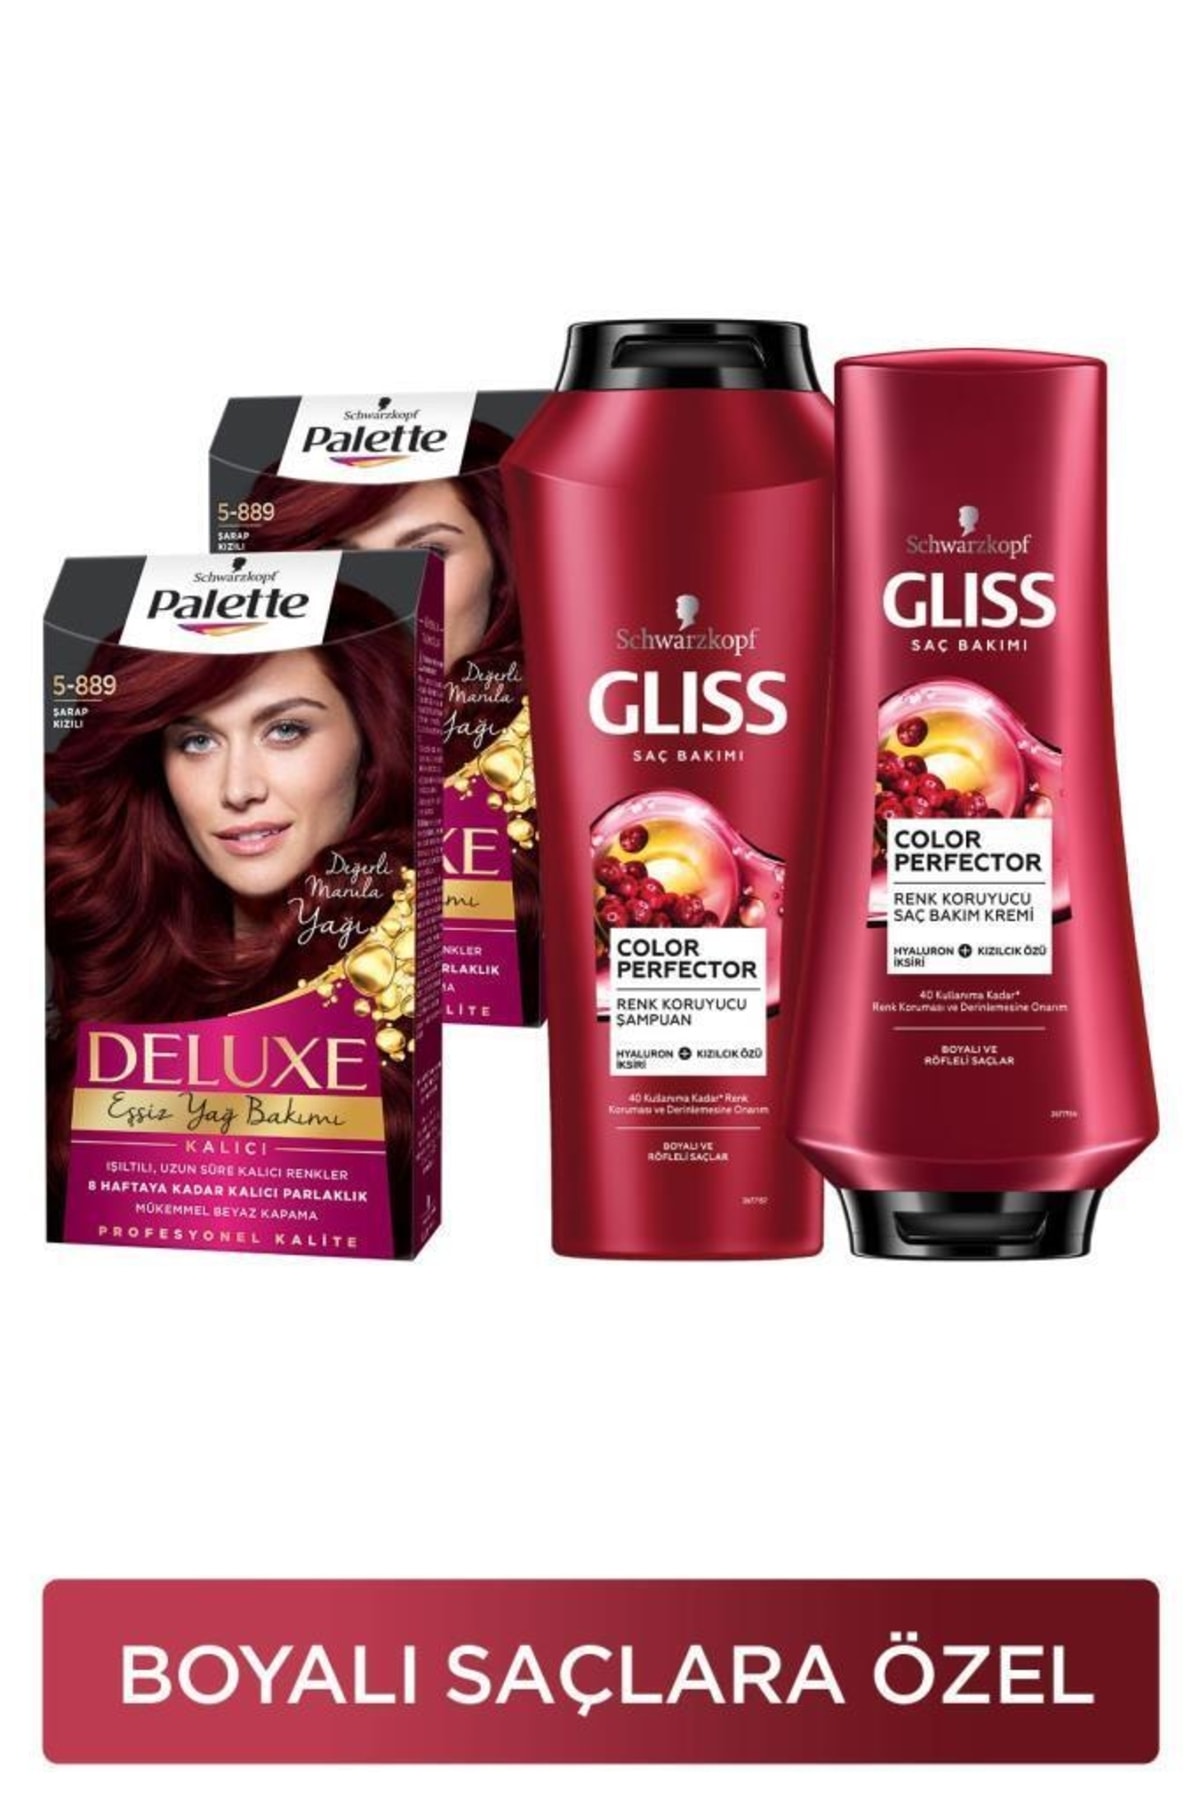 Gliss Palette Deluxe 5-889 Şarap Kızılı x 2 Adet + Color Perfector Renk Koruyucu Şampuan 500 ml + Sa